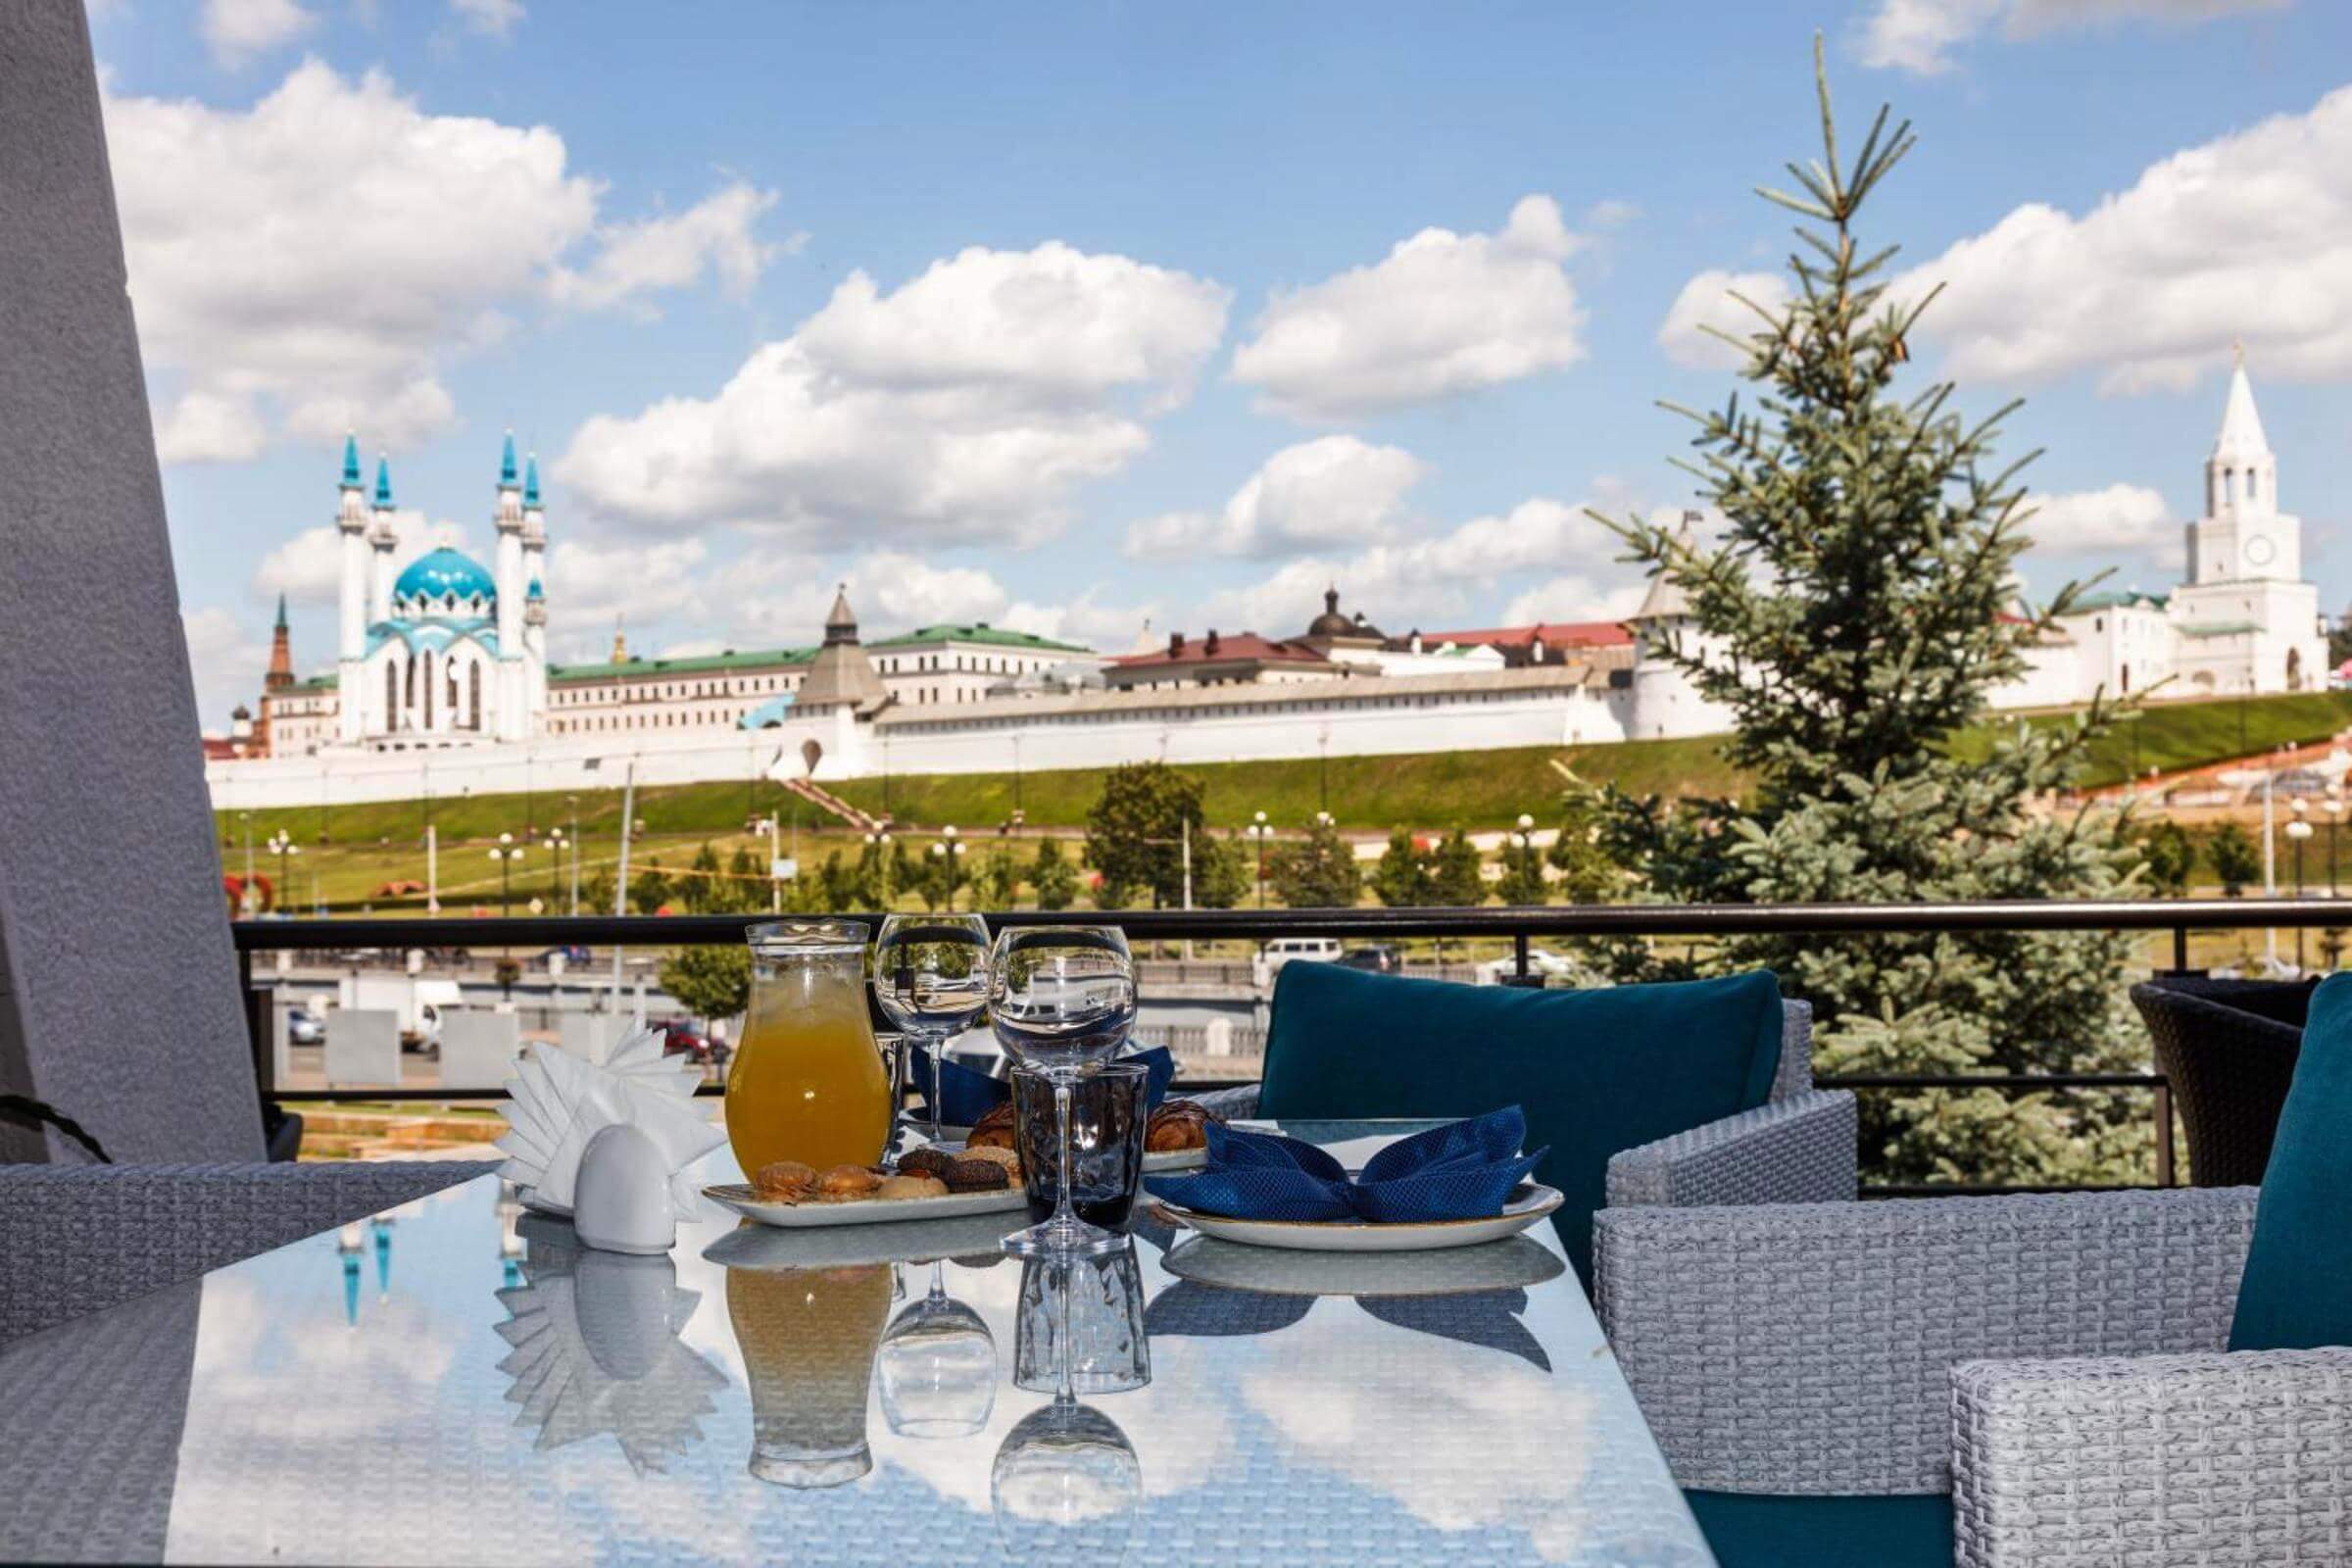 Визитная карточка отеля - ресторан с видом на стены Казанского кремля.